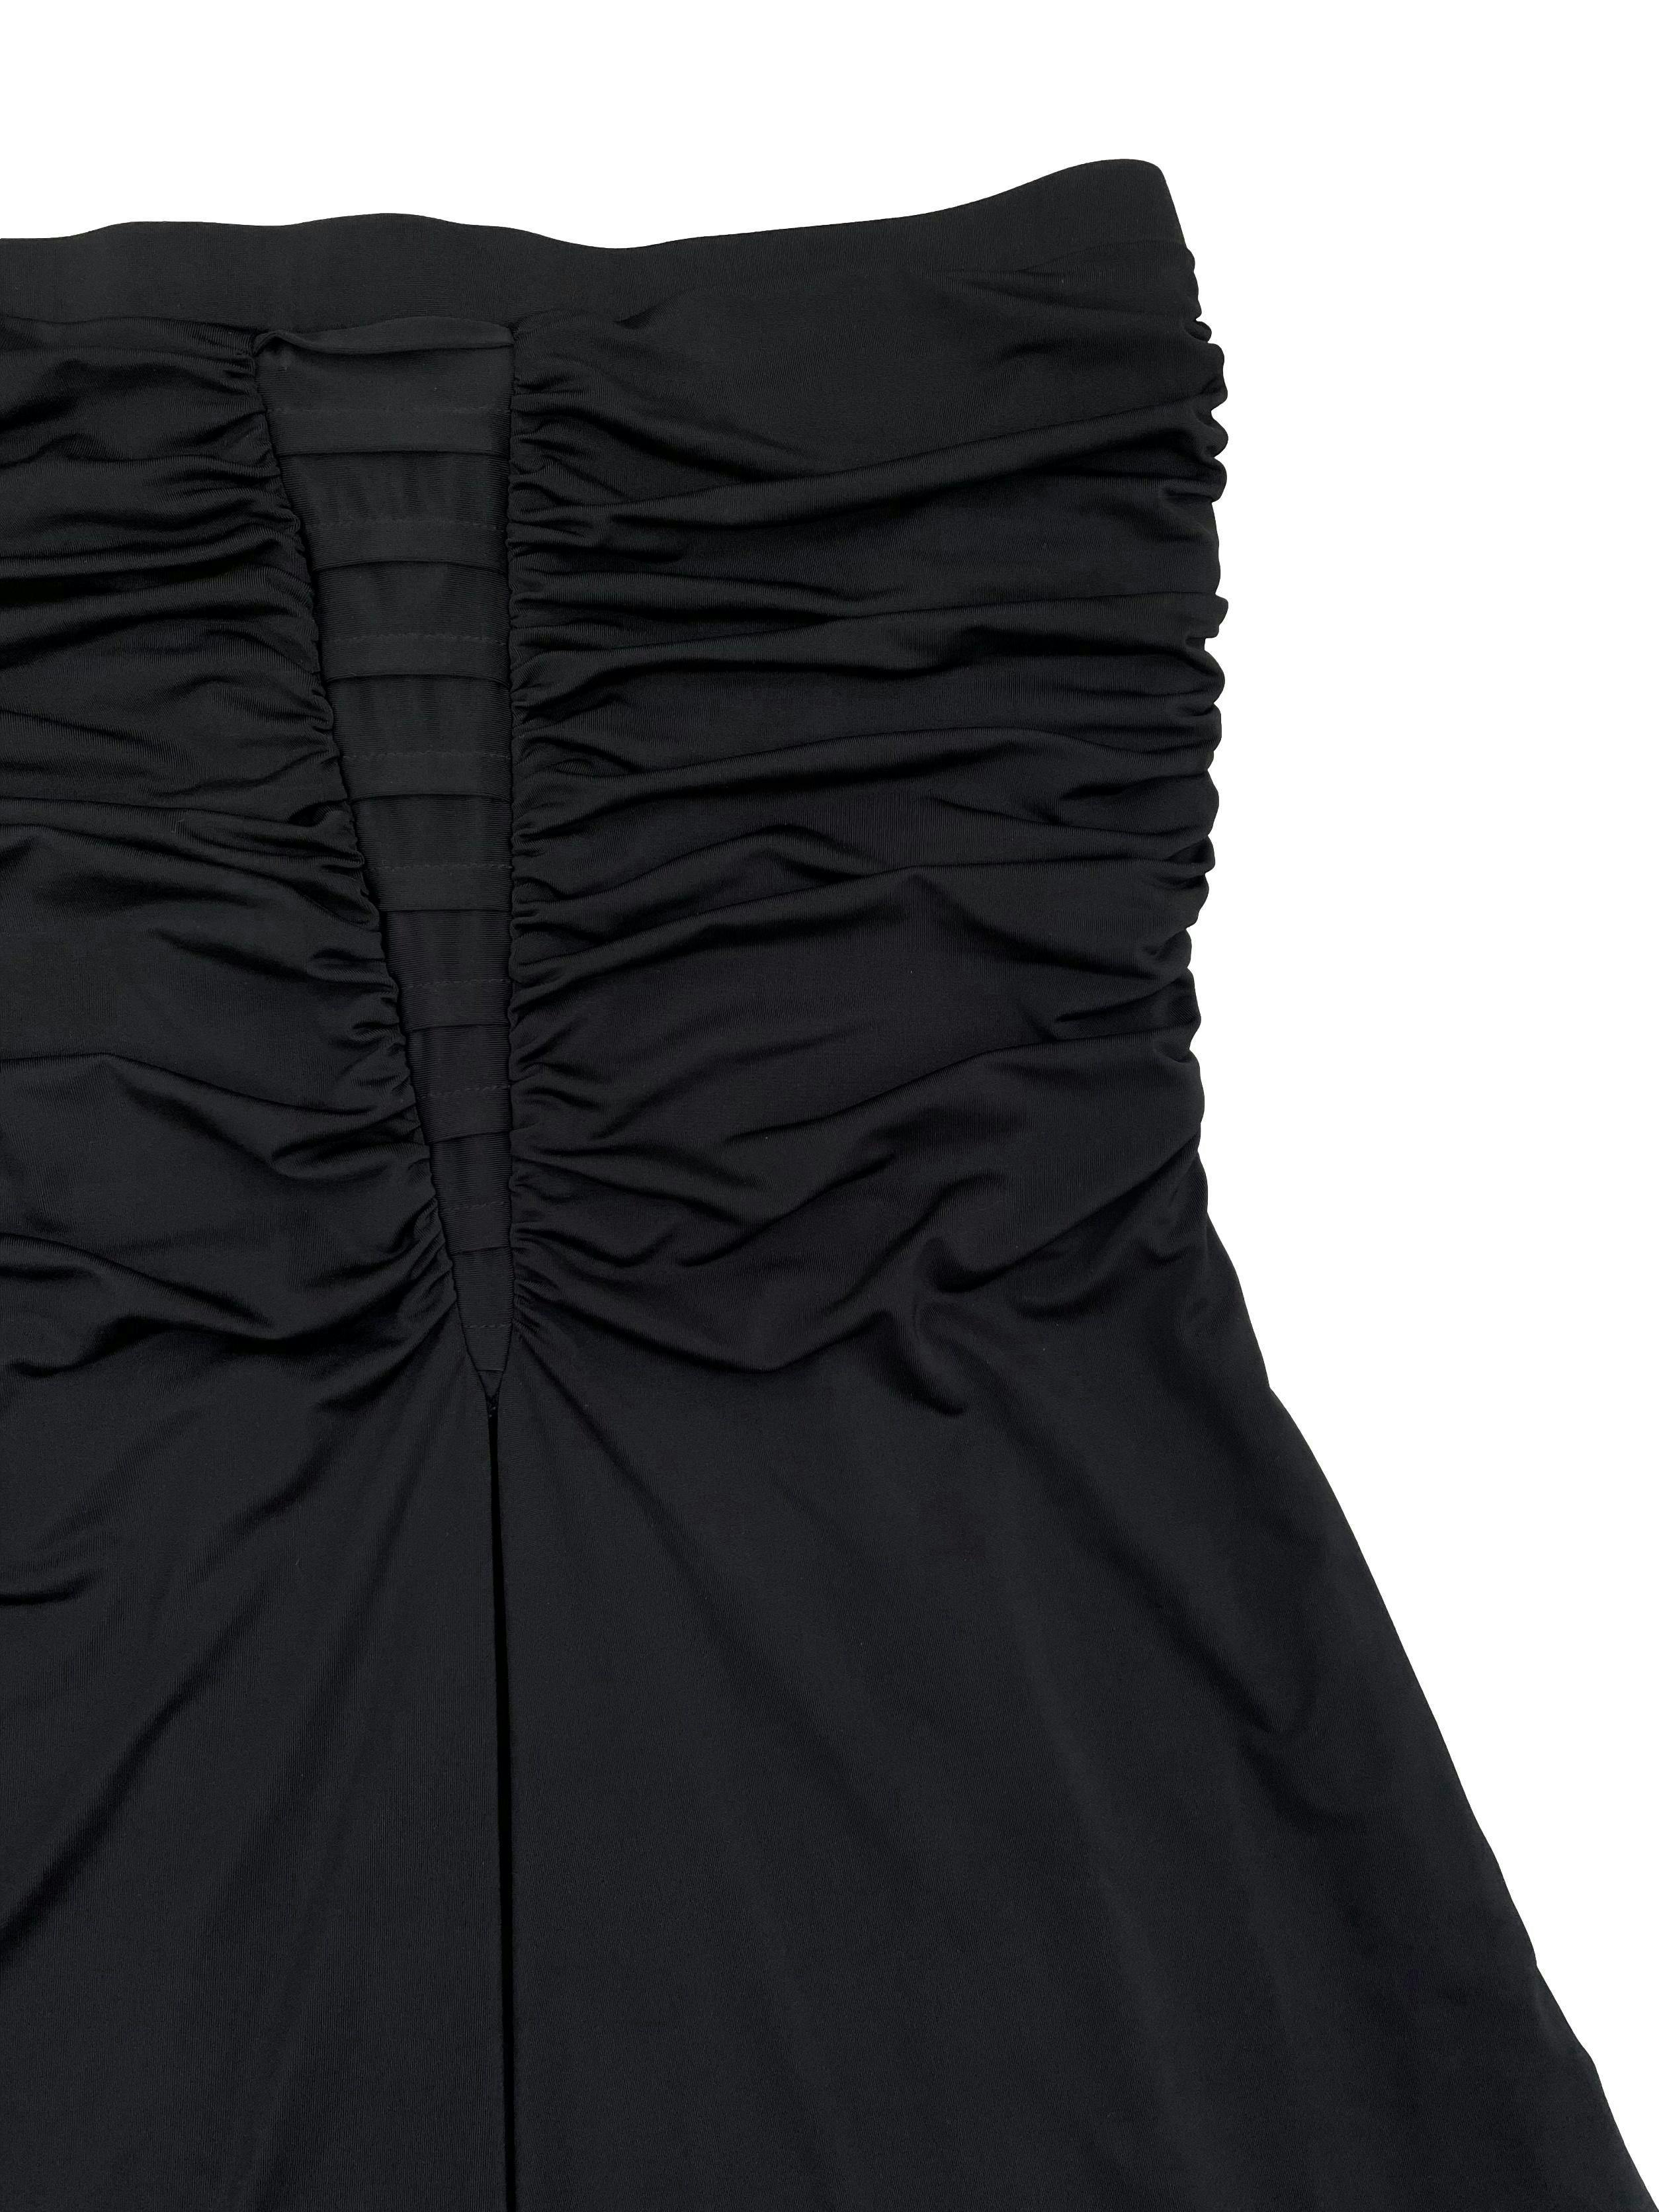 Vestido Moda&Cia negro strapless con fruncido y pliegue en el centro delantero, forrado. Busto 78cm (sin estirar) Largo 78cm.